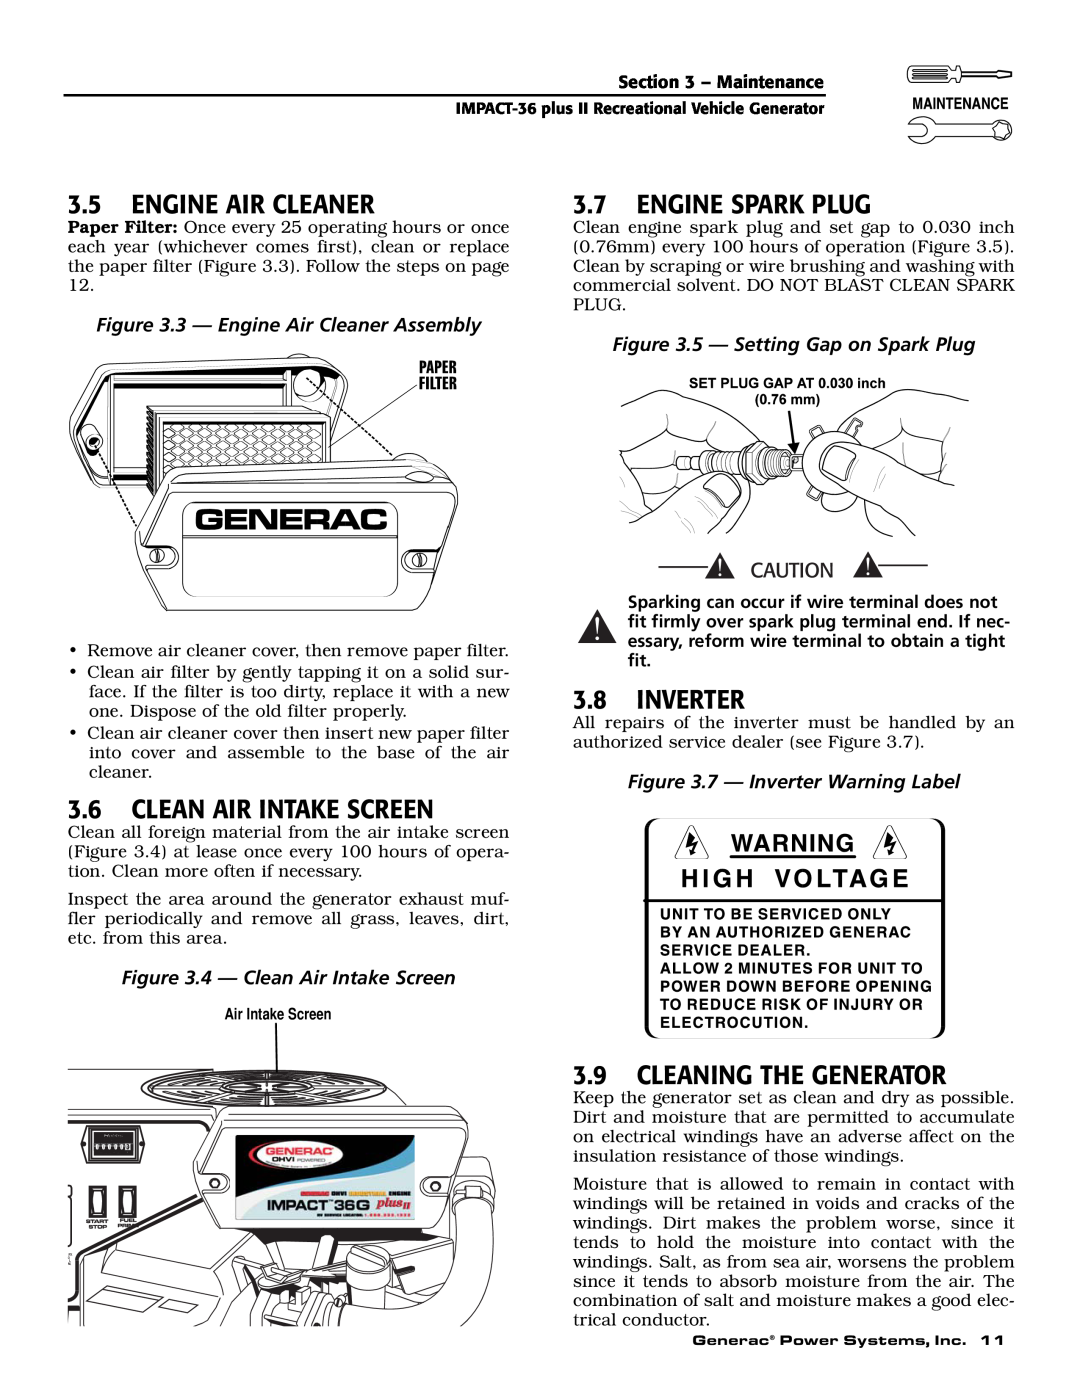 Generac 00941-3 owner manual 3.5ENGINE AIR CLEANER, 3.7ENGINE SPARK PLUG, 3.8INVERTER, 3.6CLEAN AIR INTAKE SCREEN 